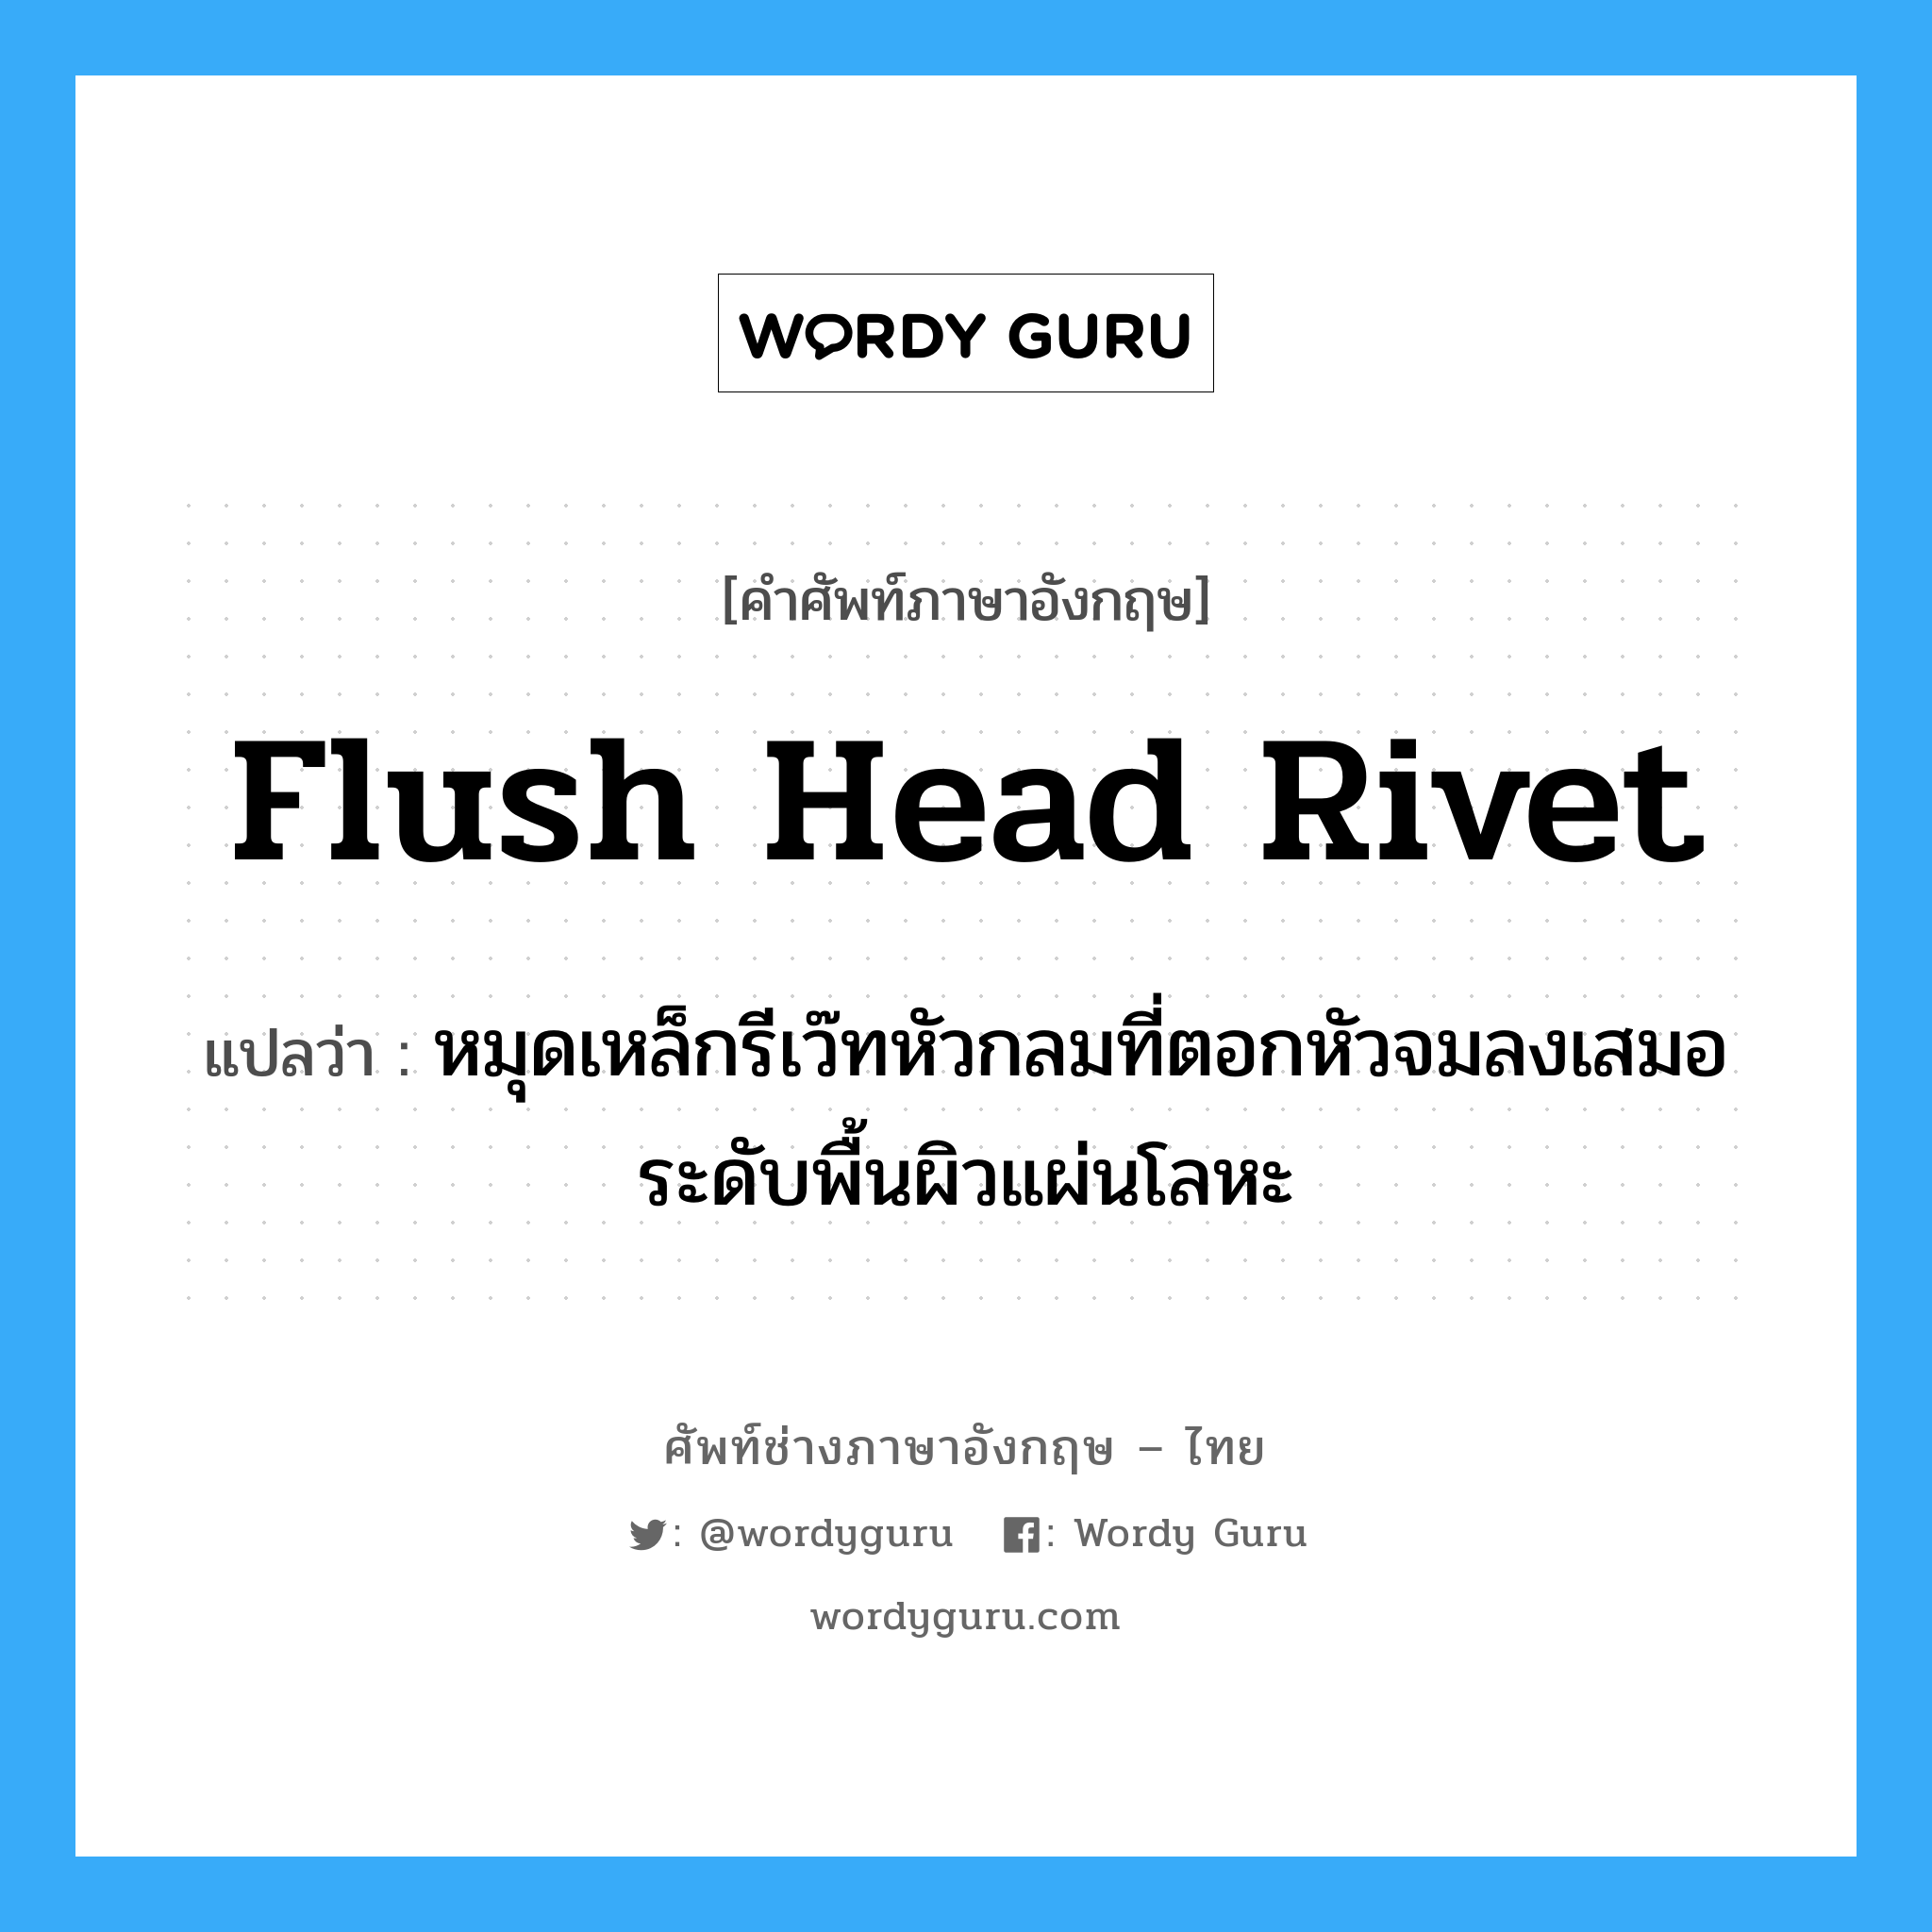 flush head rivet แปลว่า?, คำศัพท์ช่างภาษาอังกฤษ - ไทย flush head rivet คำศัพท์ภาษาอังกฤษ flush head rivet แปลว่า หมุดเหล็กรีเว๊ทหัวกลมที่ตอกหัวจมลงเสมอ ระดับพื้นผิวแผ่นโลหะ